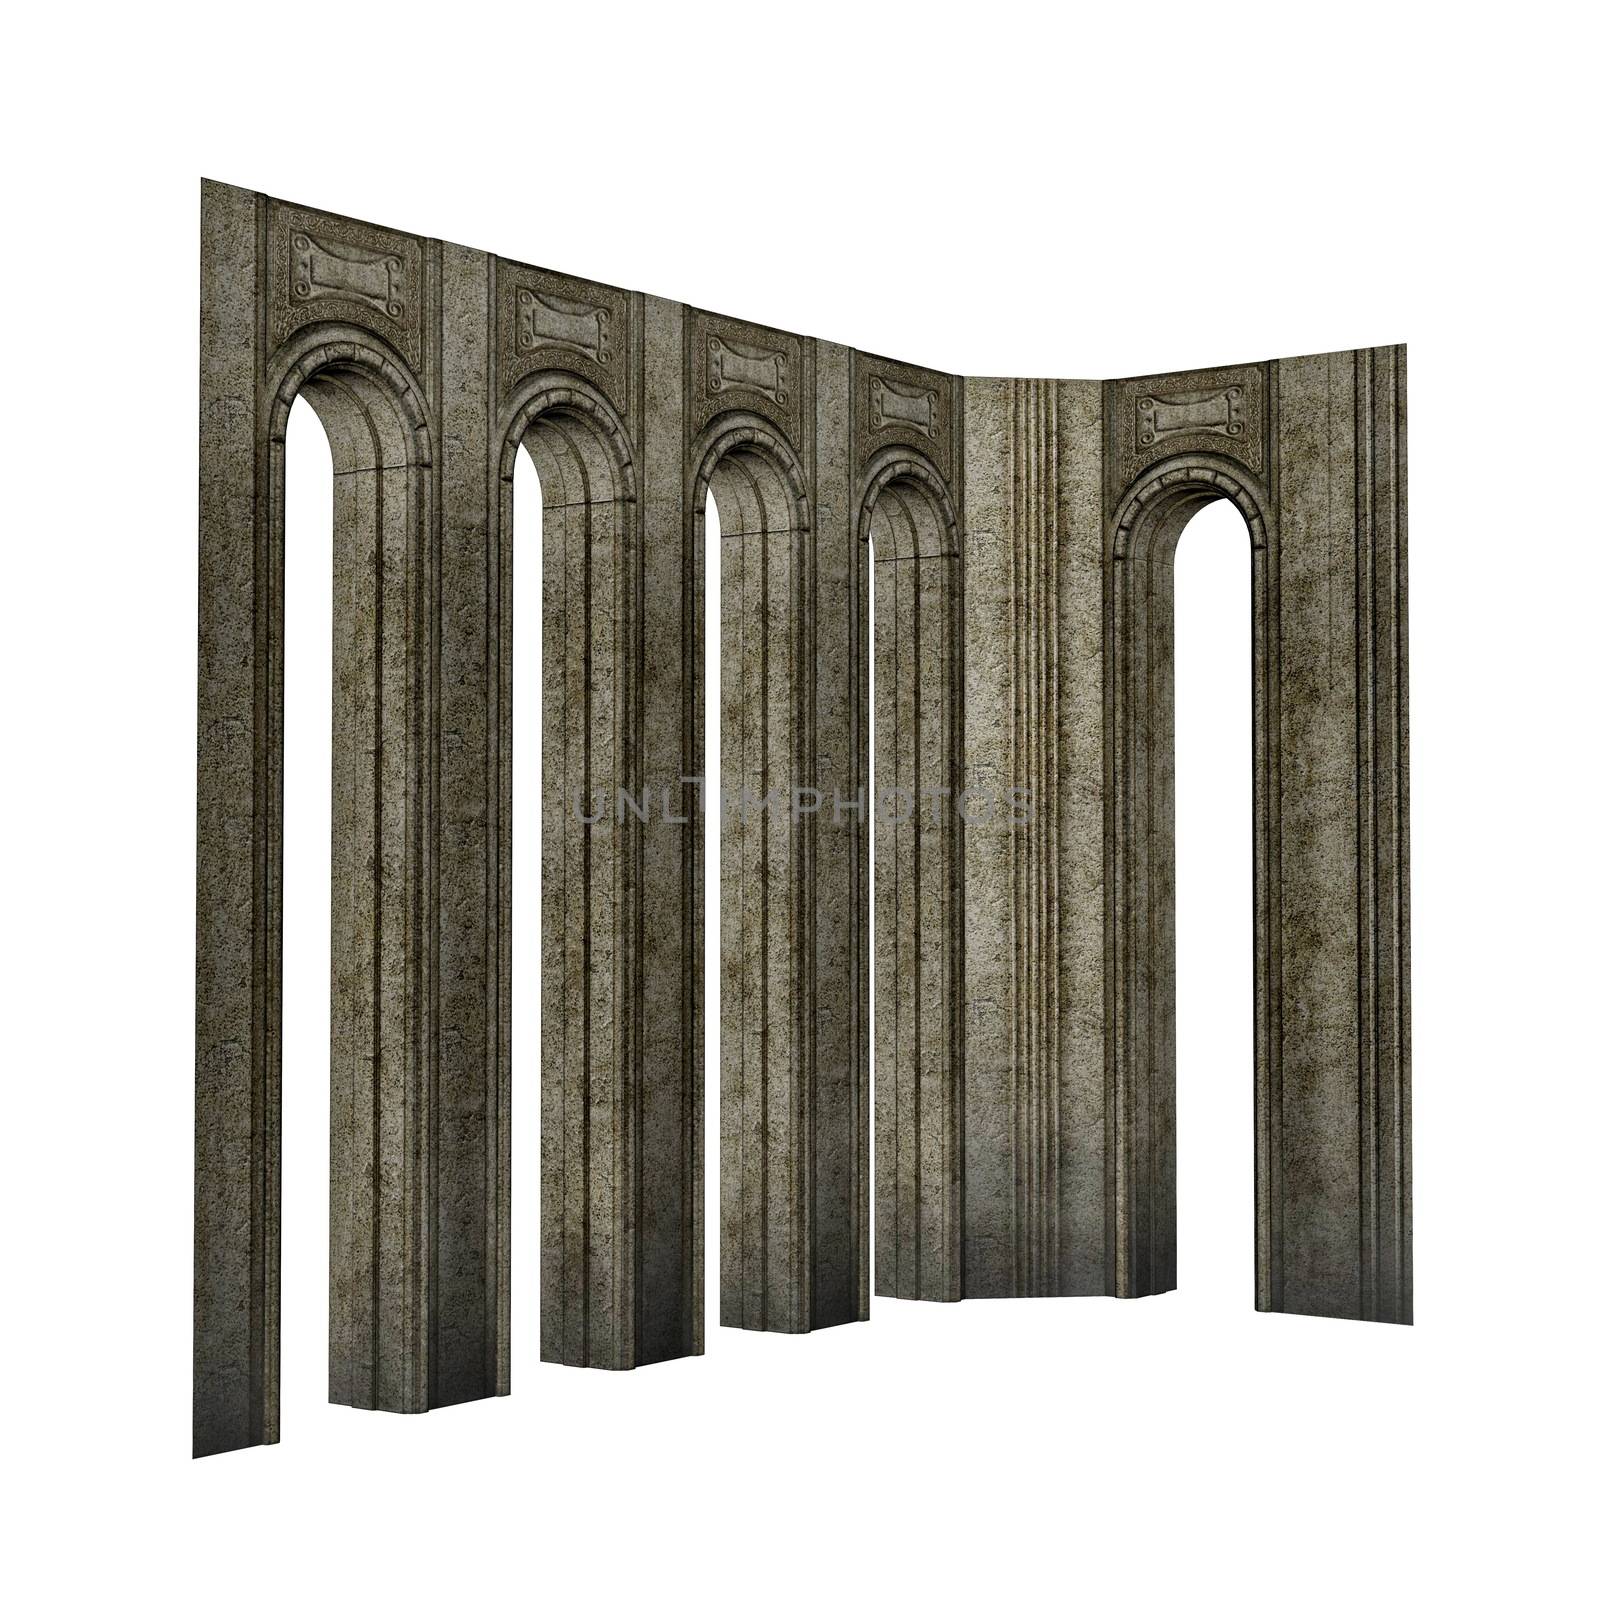 Arch pillars - 3D render by Elenaphotos21